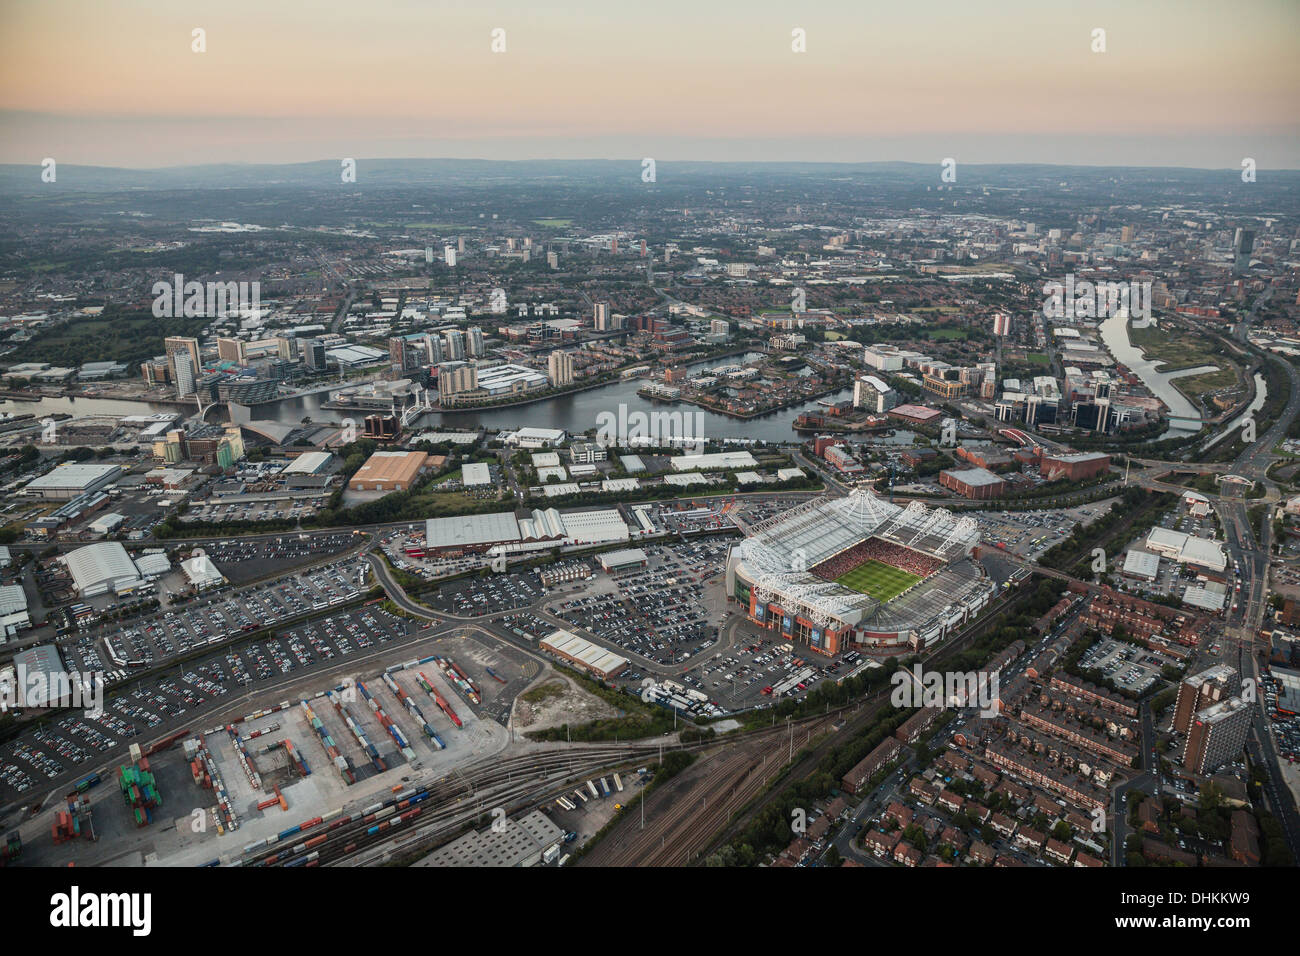 Crépuscule vue aérienne sur Manchester avec terrain de football Old Trafford Cricket Ground et à l'avant-plan. Banque D'Images